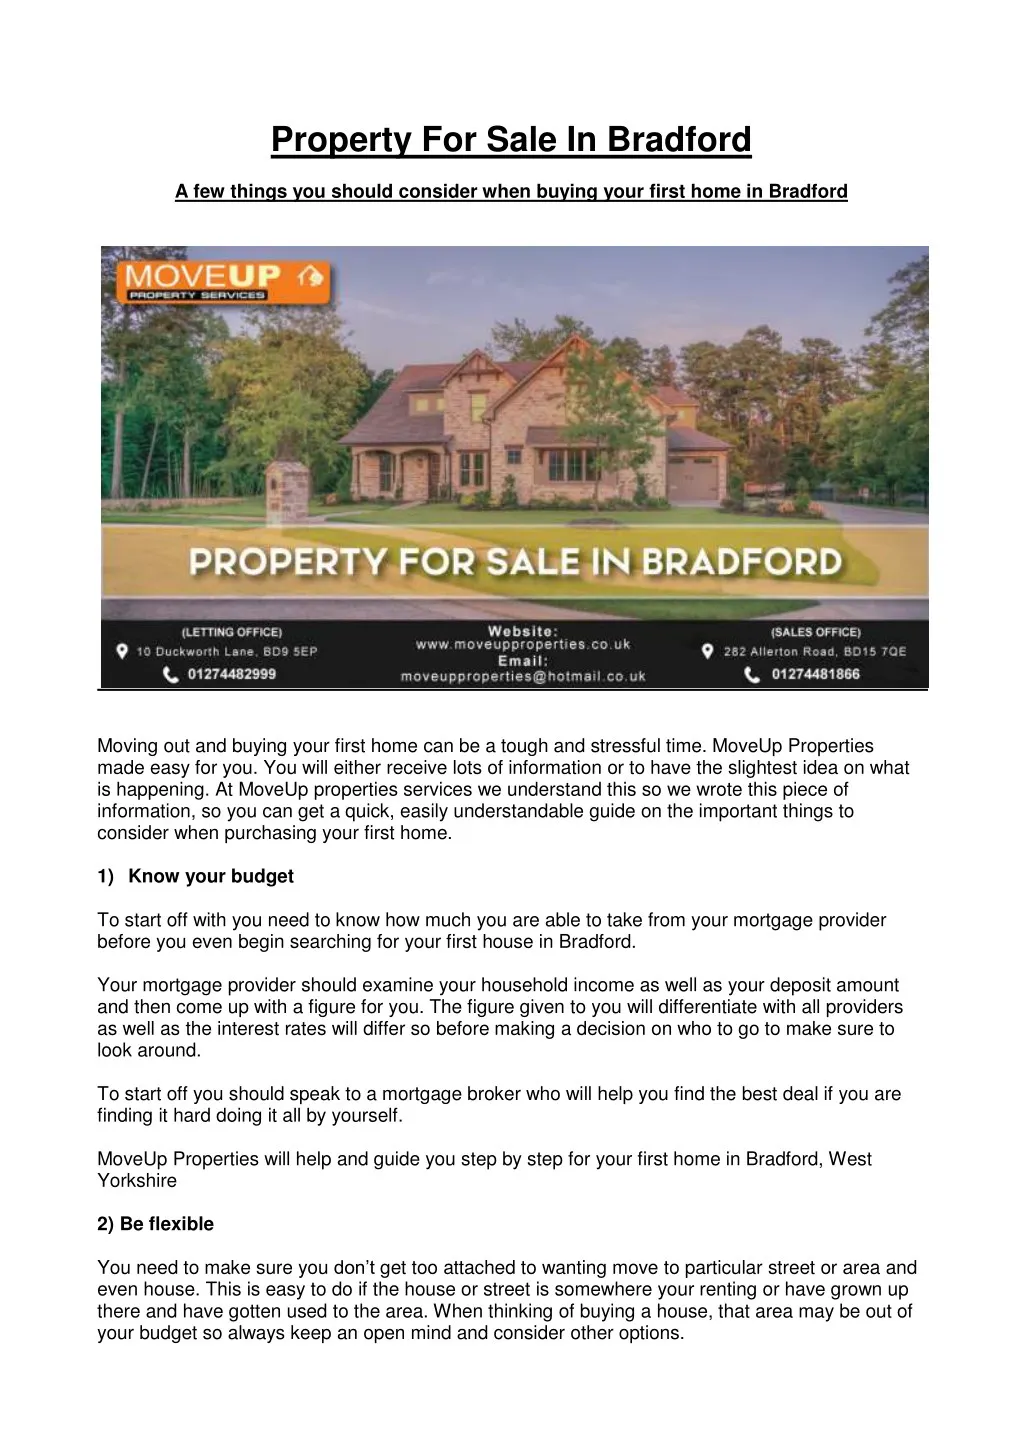 property for sale in bradford